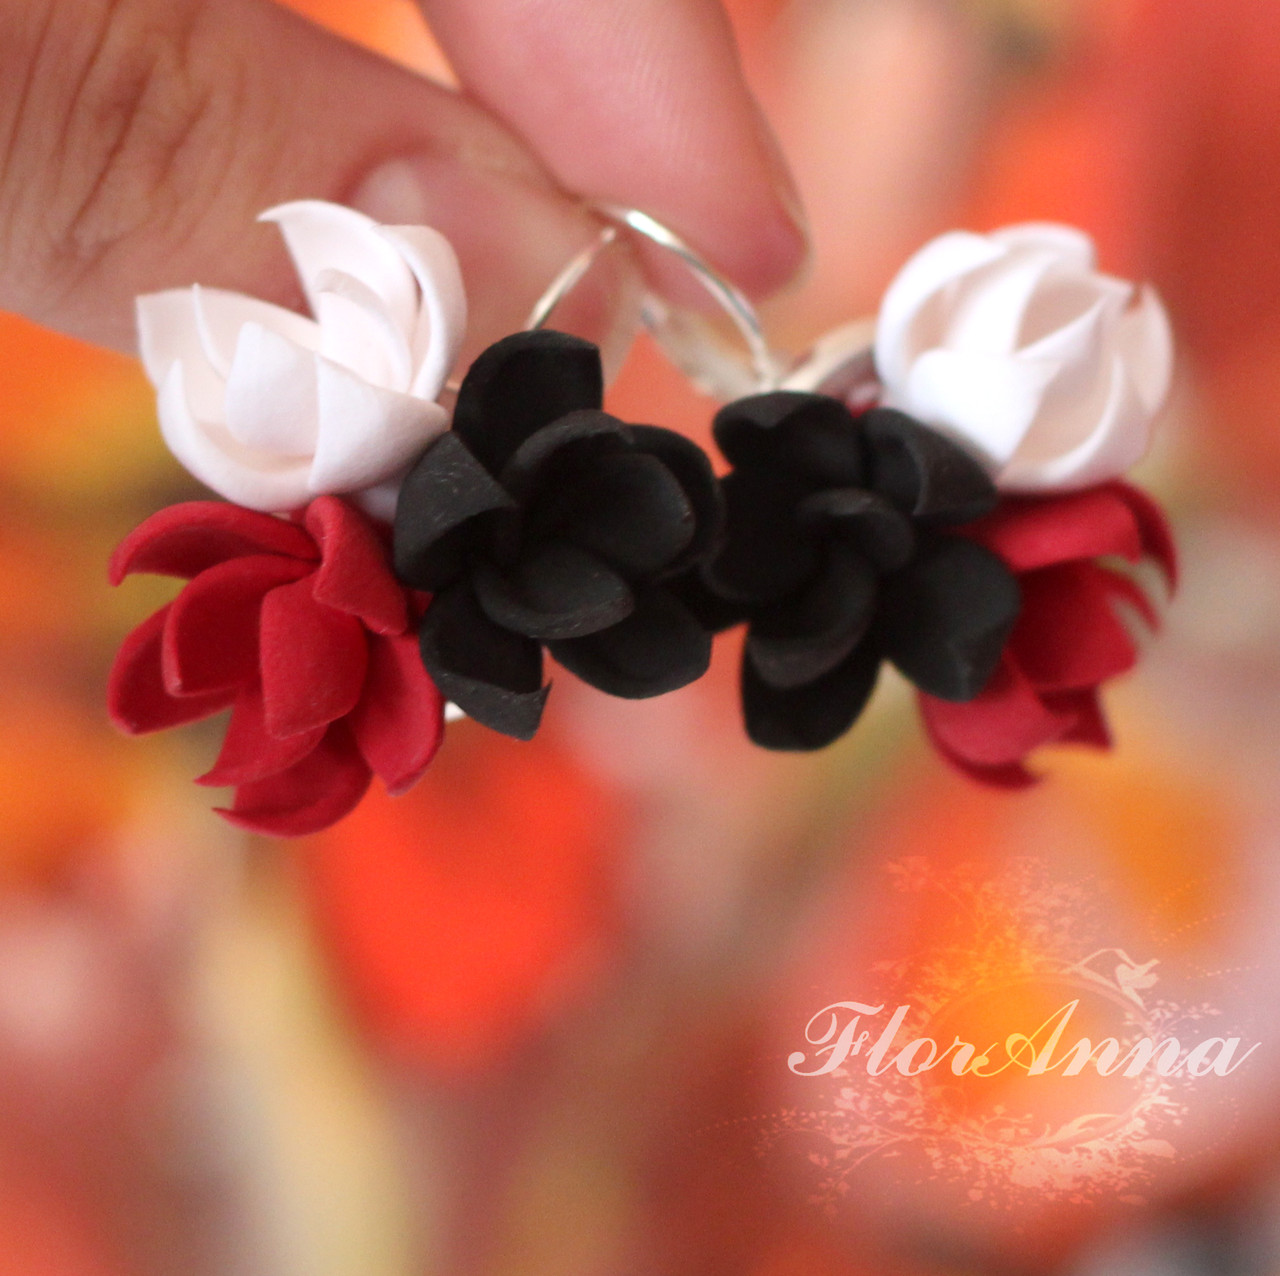 Червоно-чорні сережки ручної роботи з квітами  "Готика". Прикраси з полімерної глини